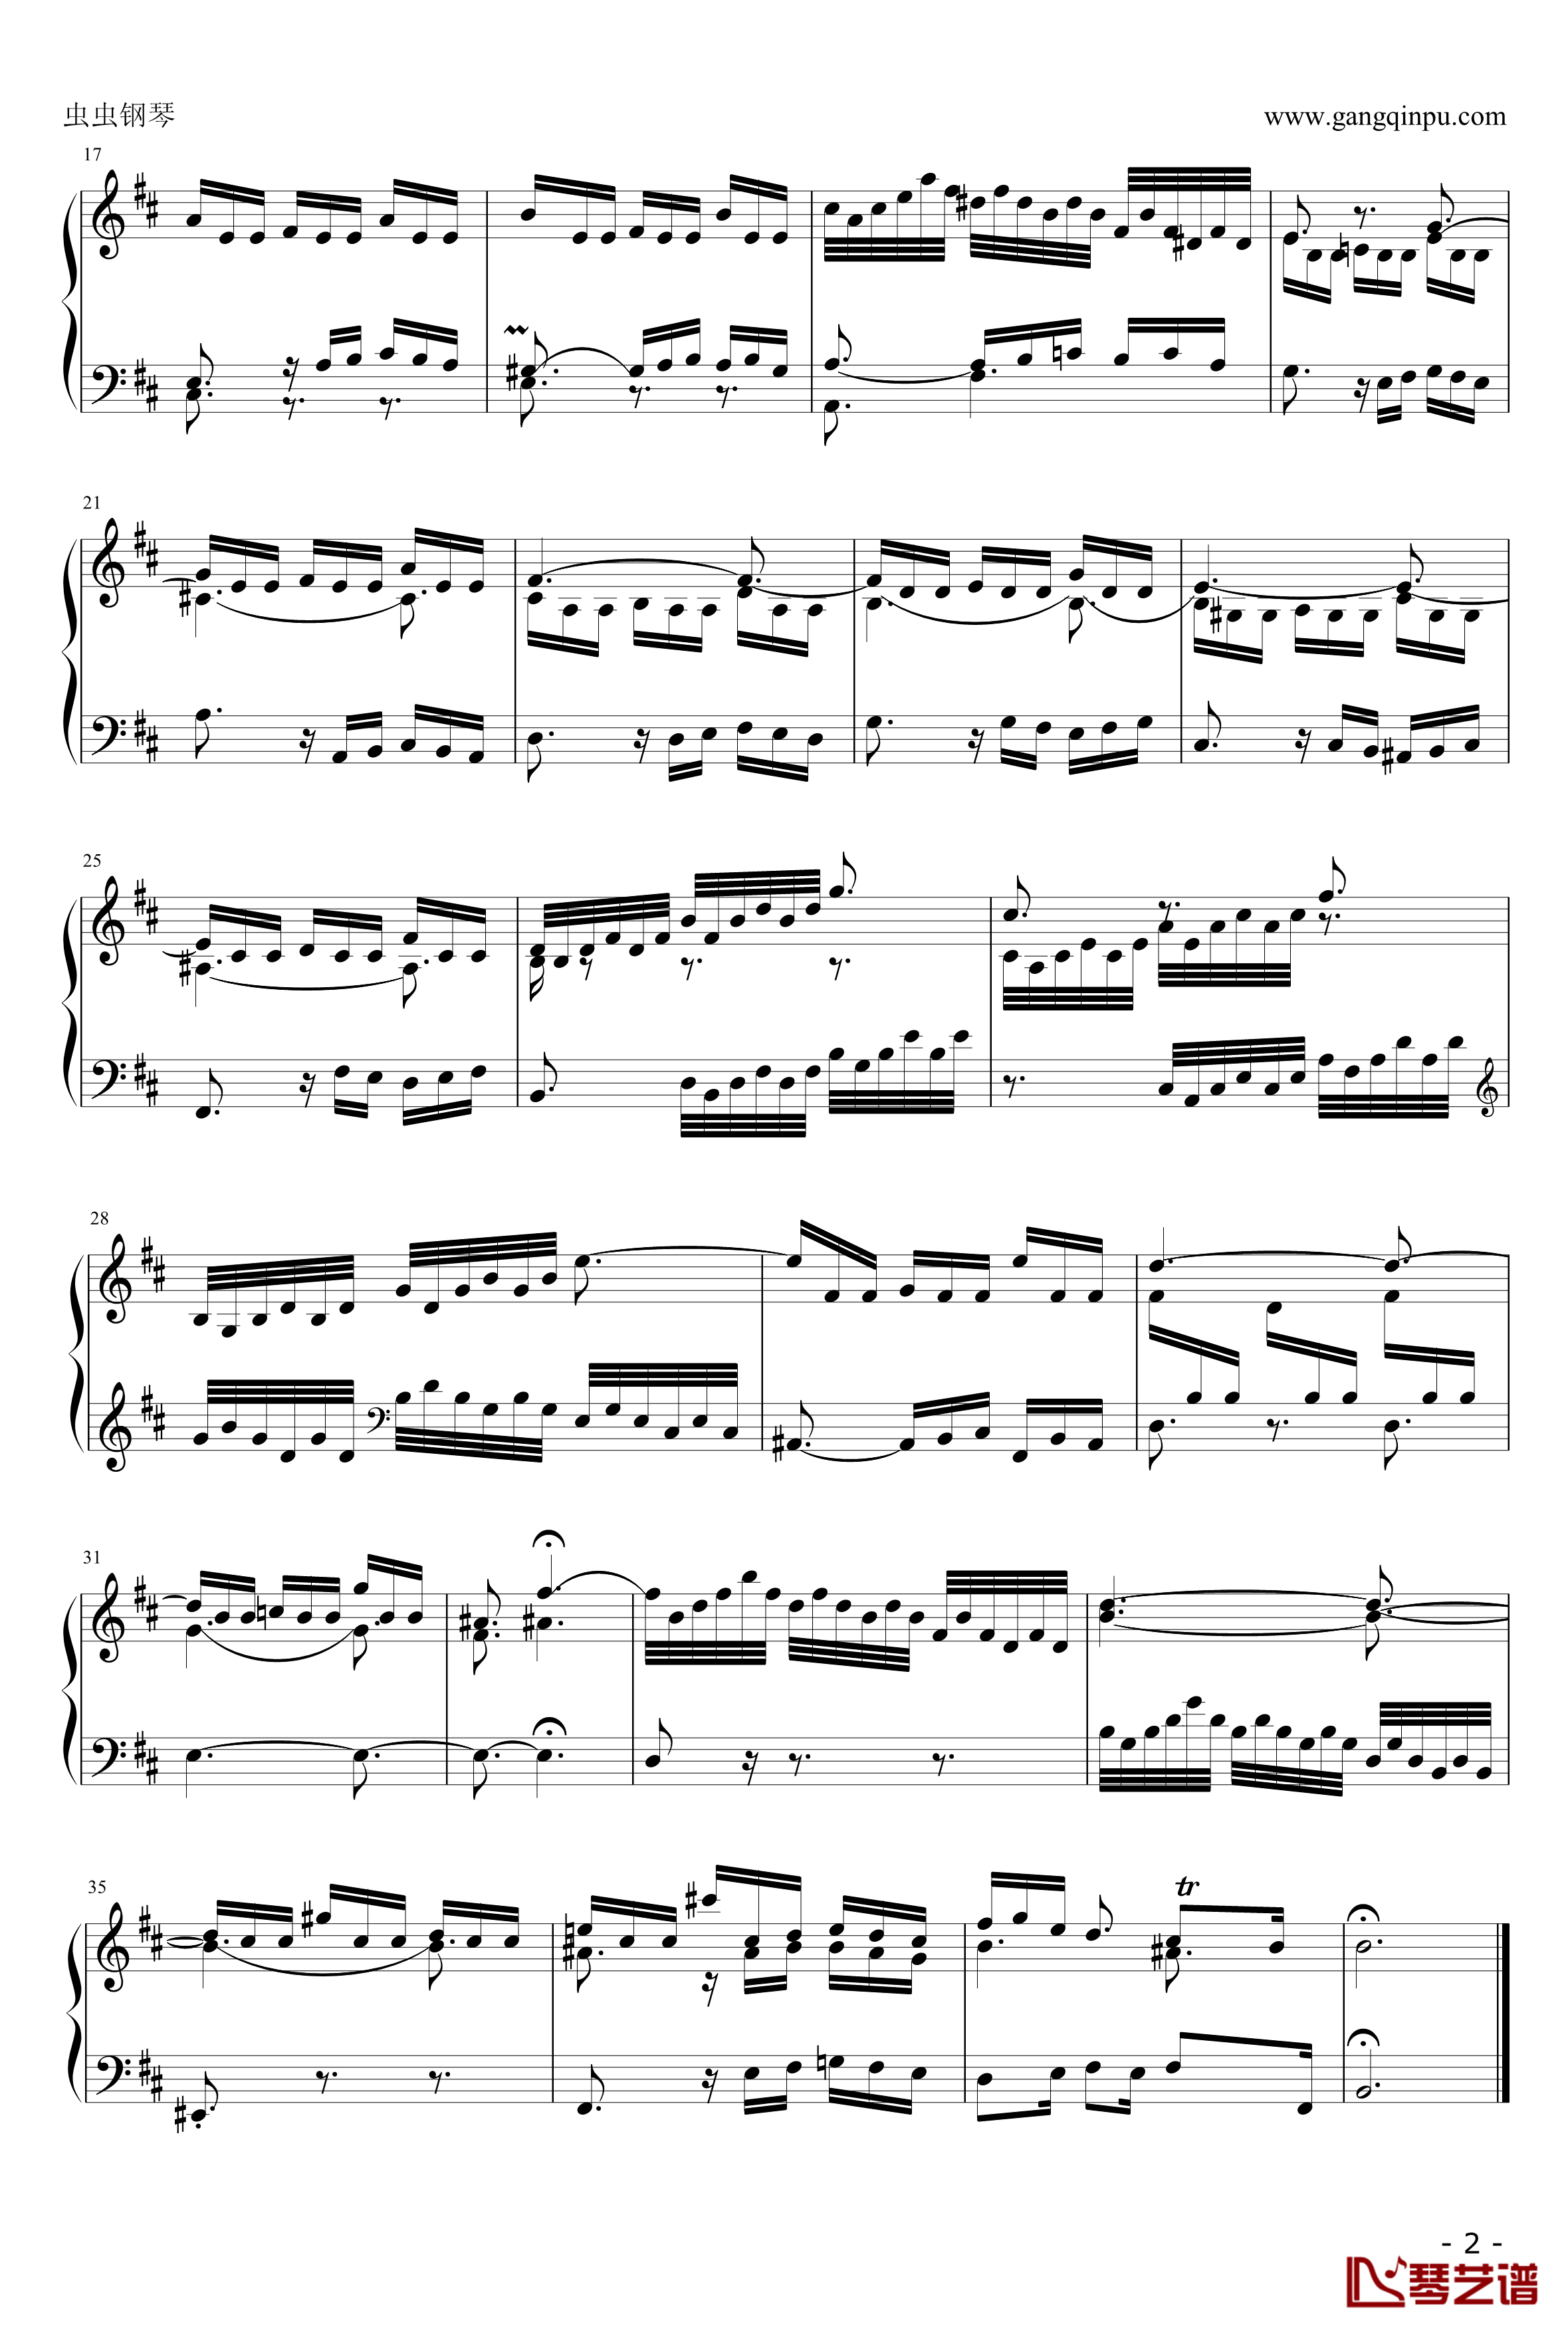 三部创意NO.15钢琴谱-奥芬巴赫-第15首